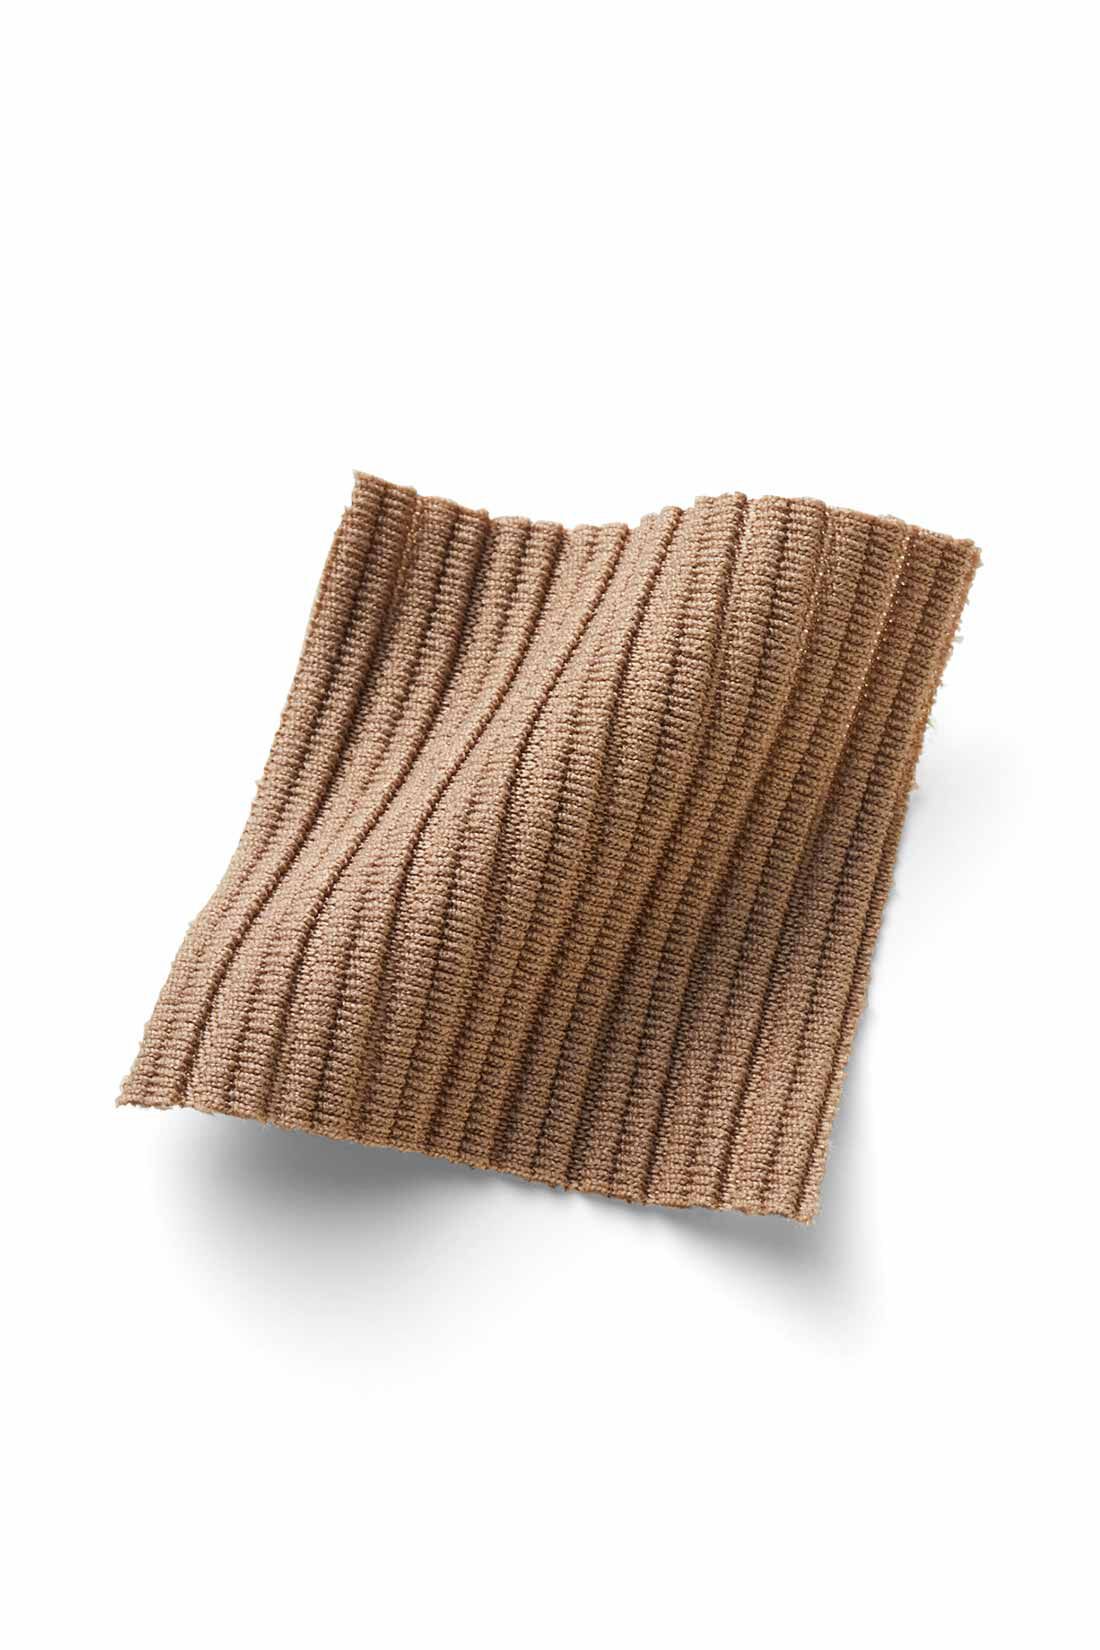 Real Stock|IEDIT[イディット]　ニットライクなリップルカットソー素材で仕立てた らくちんきれいなIラインスカート〈2〉|リブニットのような縦ラインを描く、やや張り感のあるリップルカットソー素材。